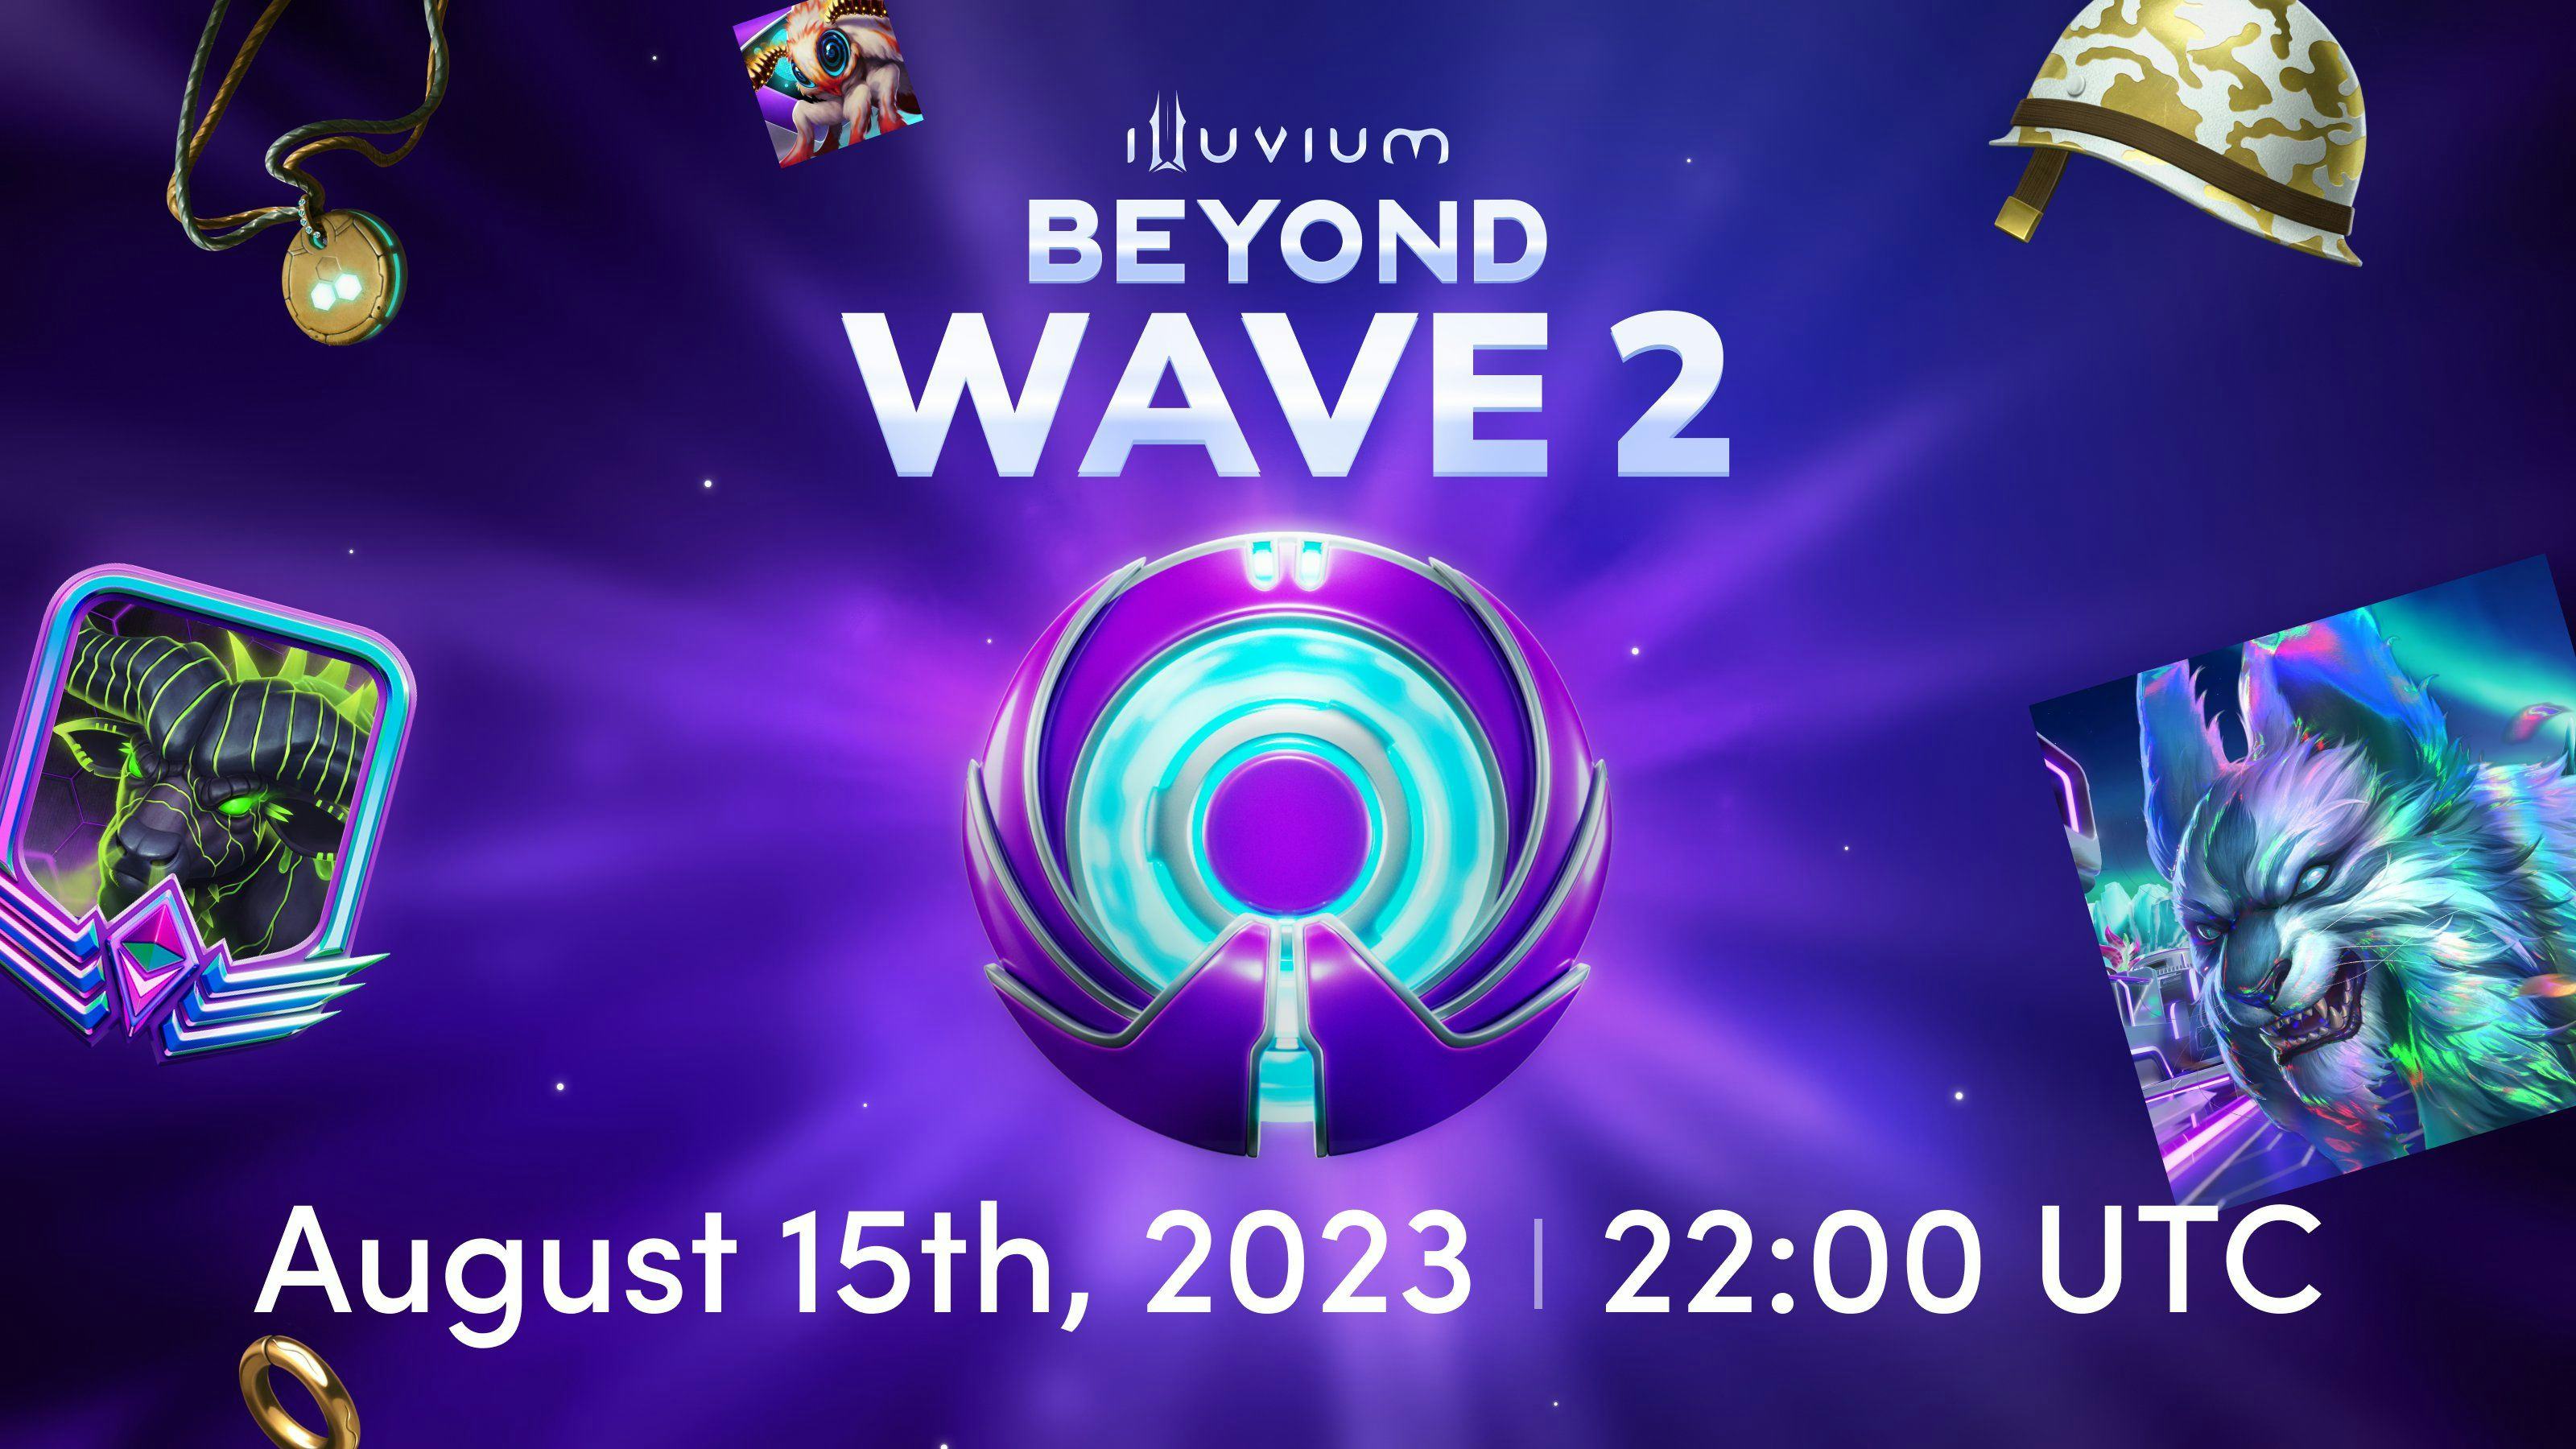 Illuvium: Beyond Wave 2 Sale Kicks Off August 15th